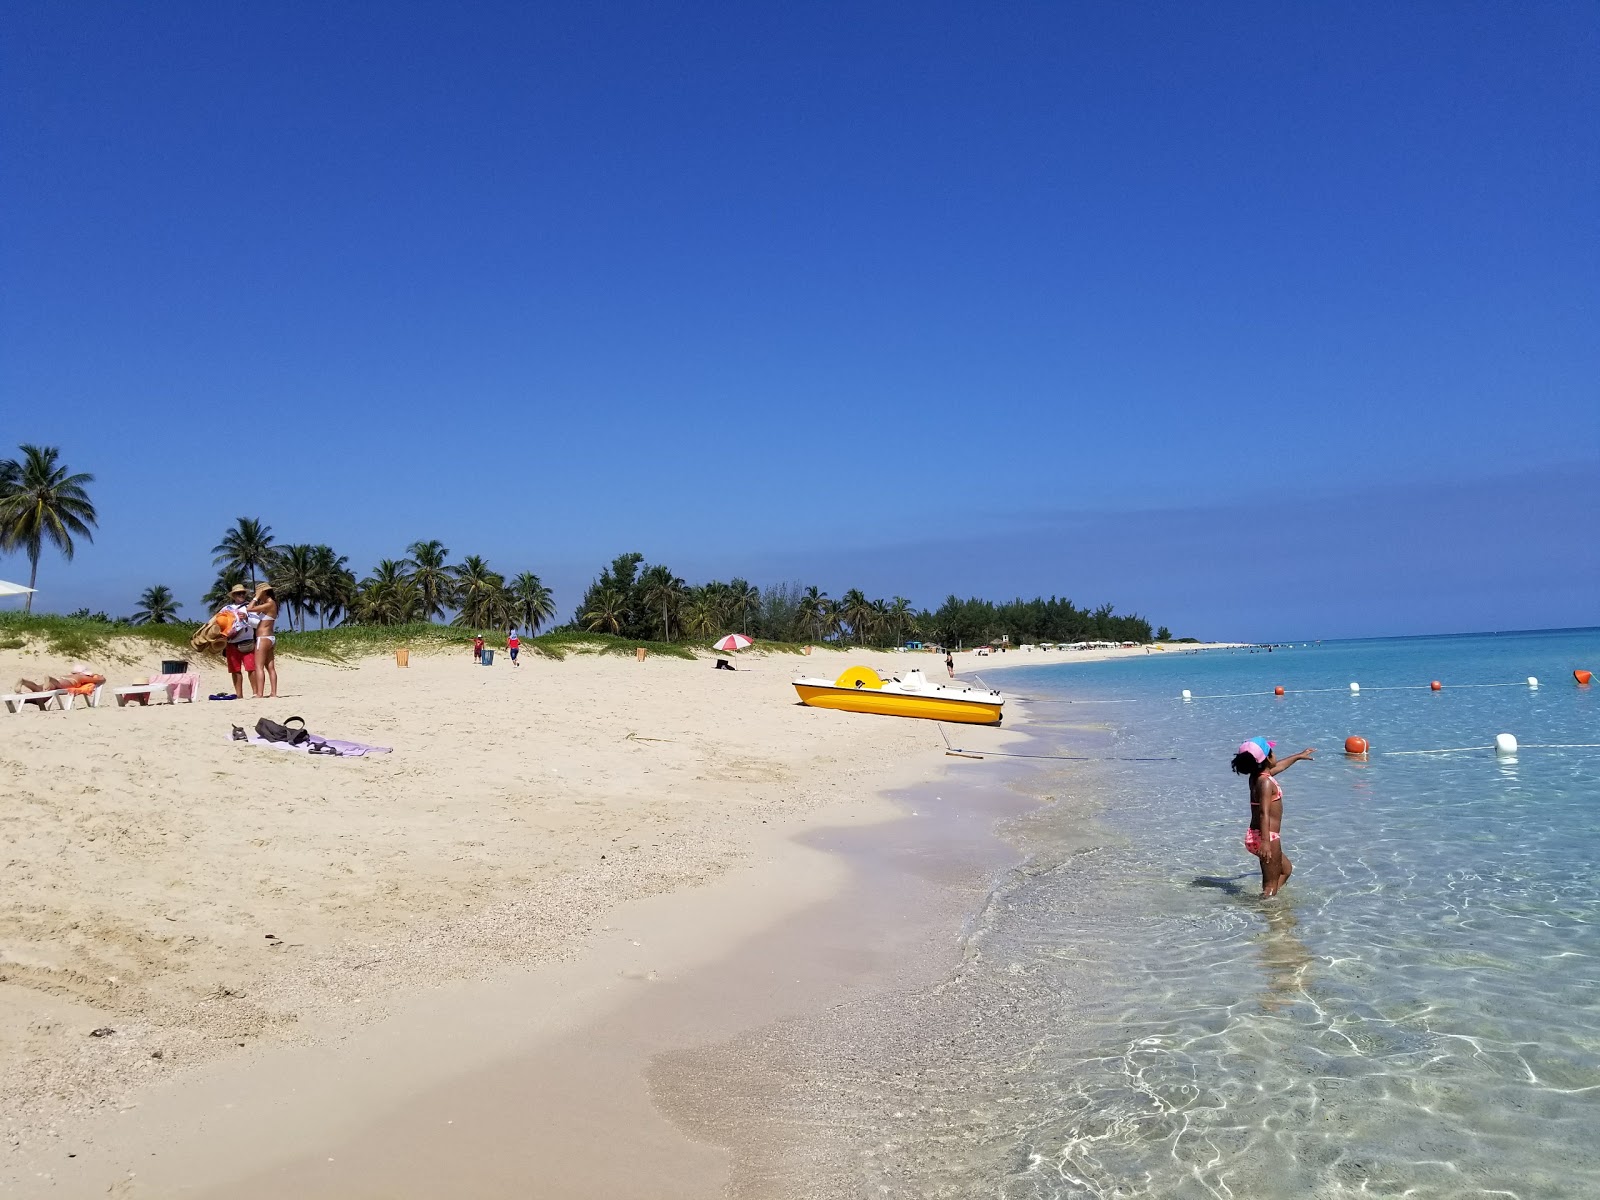 Playa Megano'in fotoğrafı parlak kum yüzey ile